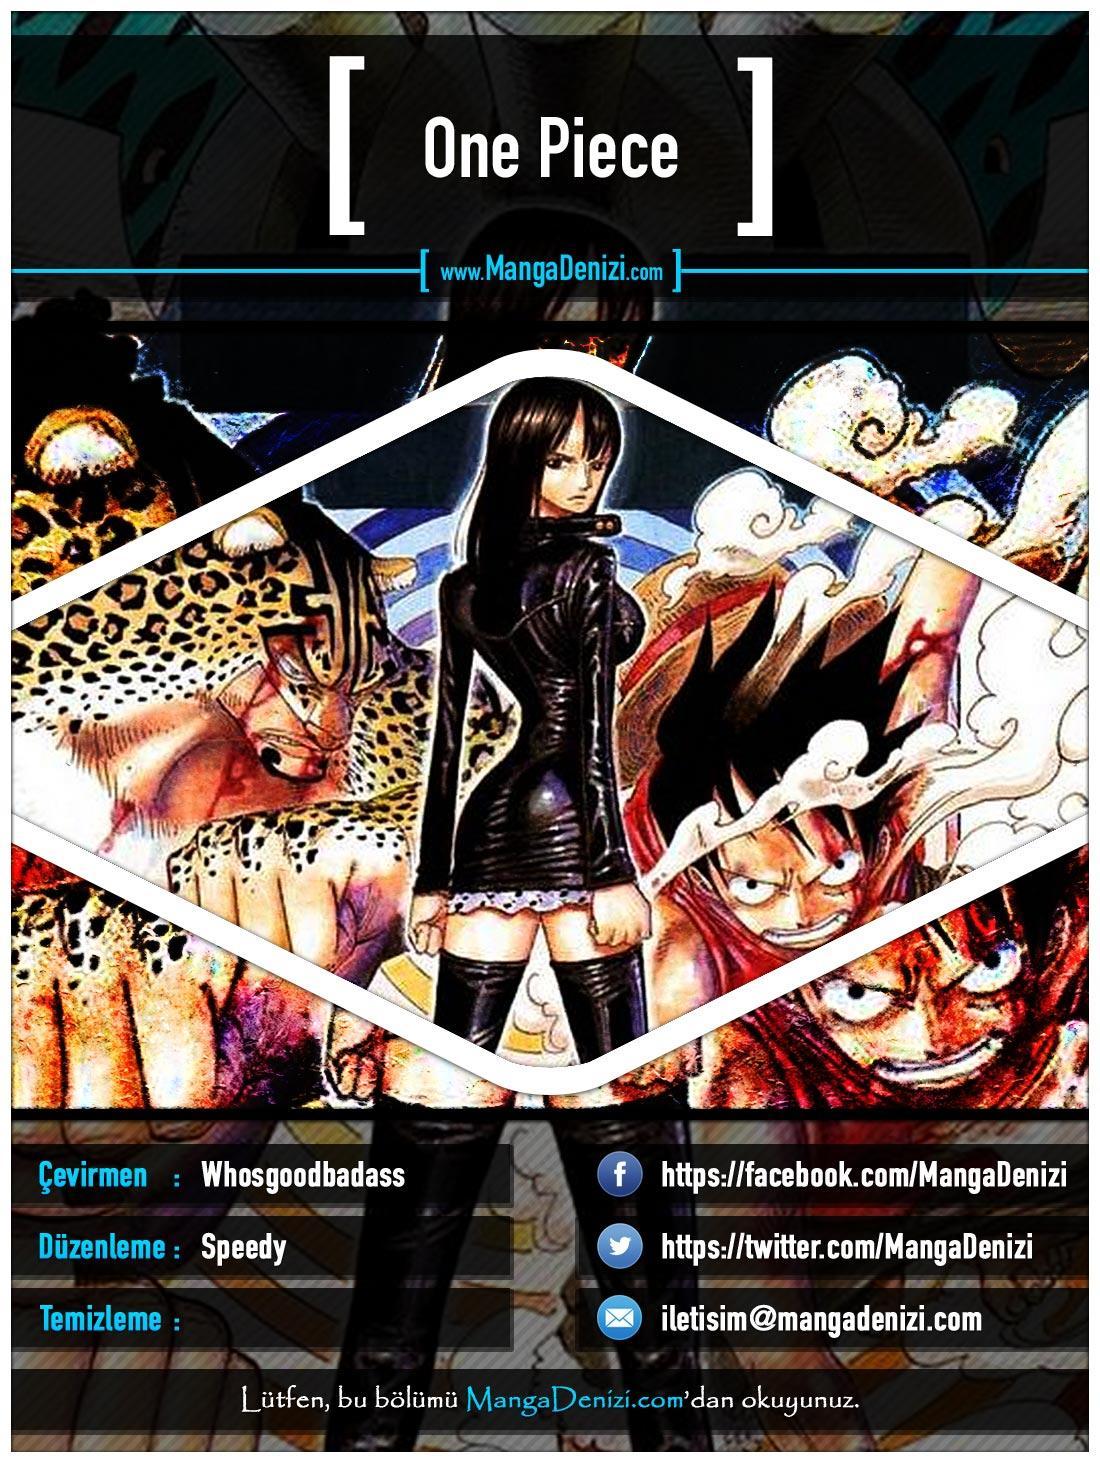 One Piece [Renkli] mangasının 0400 bölümünün 1. sayfasını okuyorsunuz.